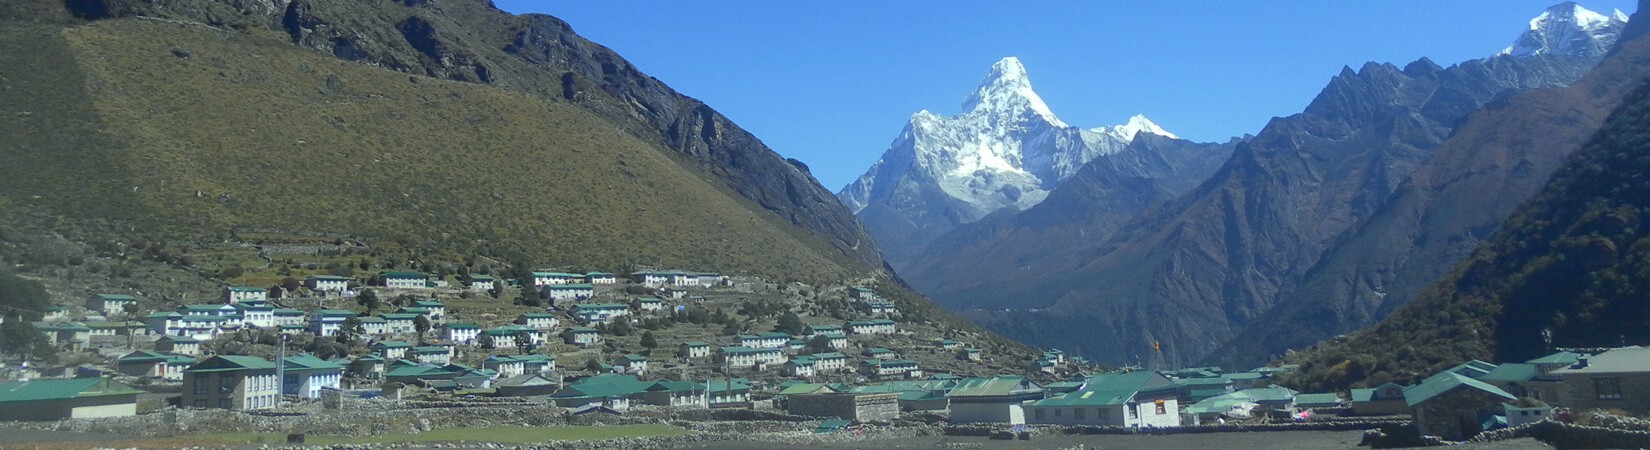 Khumjung Village